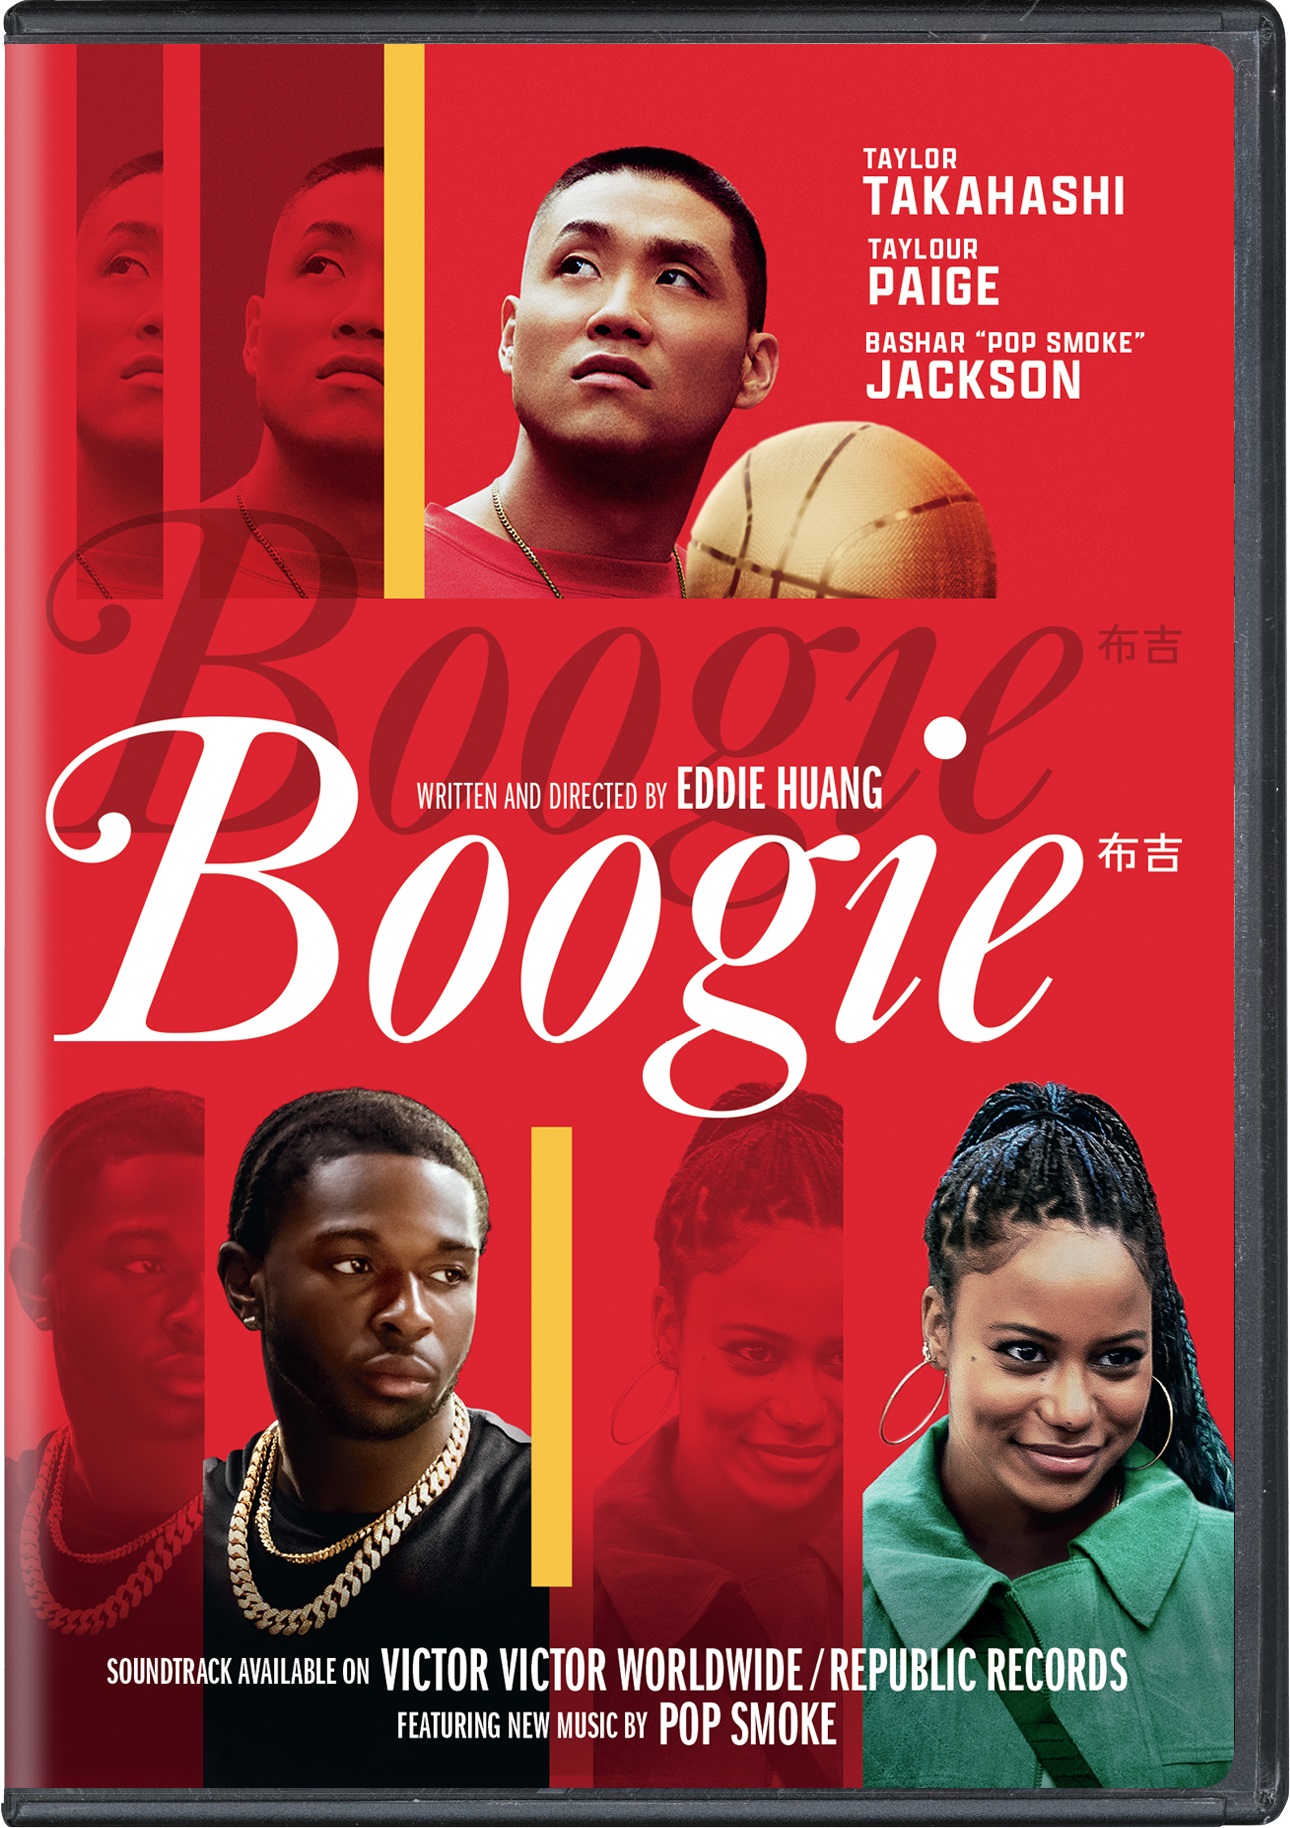 Boogie - DVD [ 2021 ]  - Drama Movies On DVD - Movies On GRUV